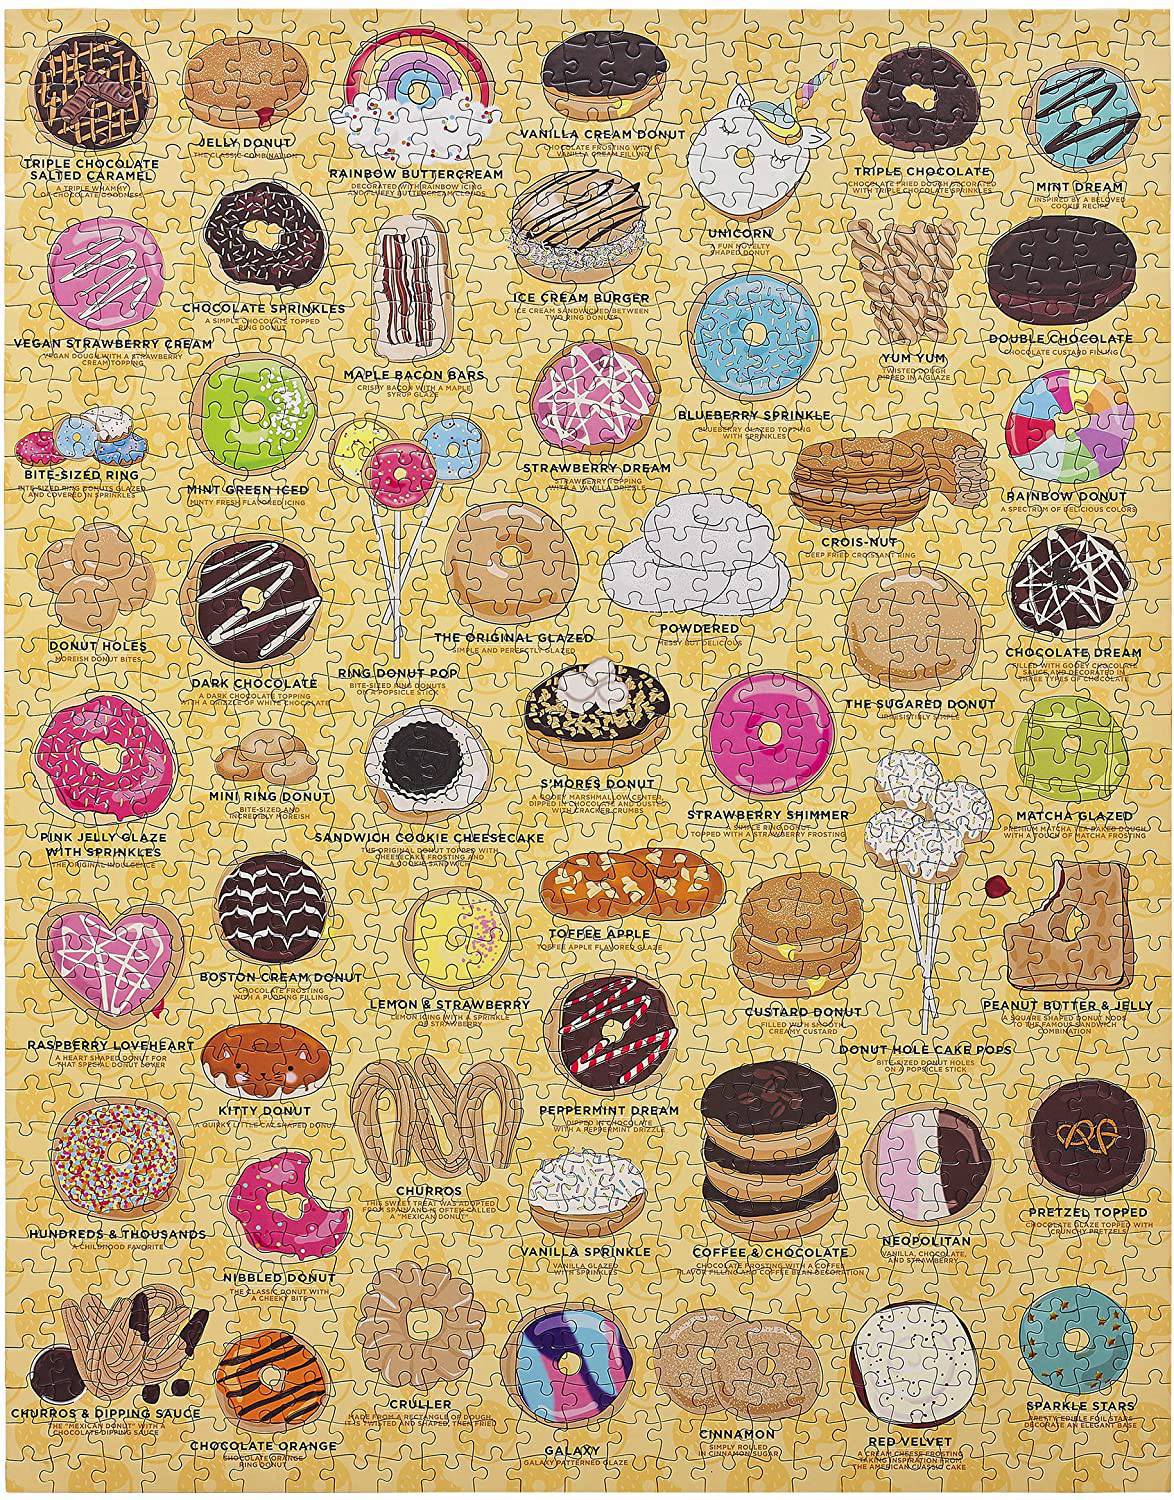 puzzle nourriture cuisine donut beignet